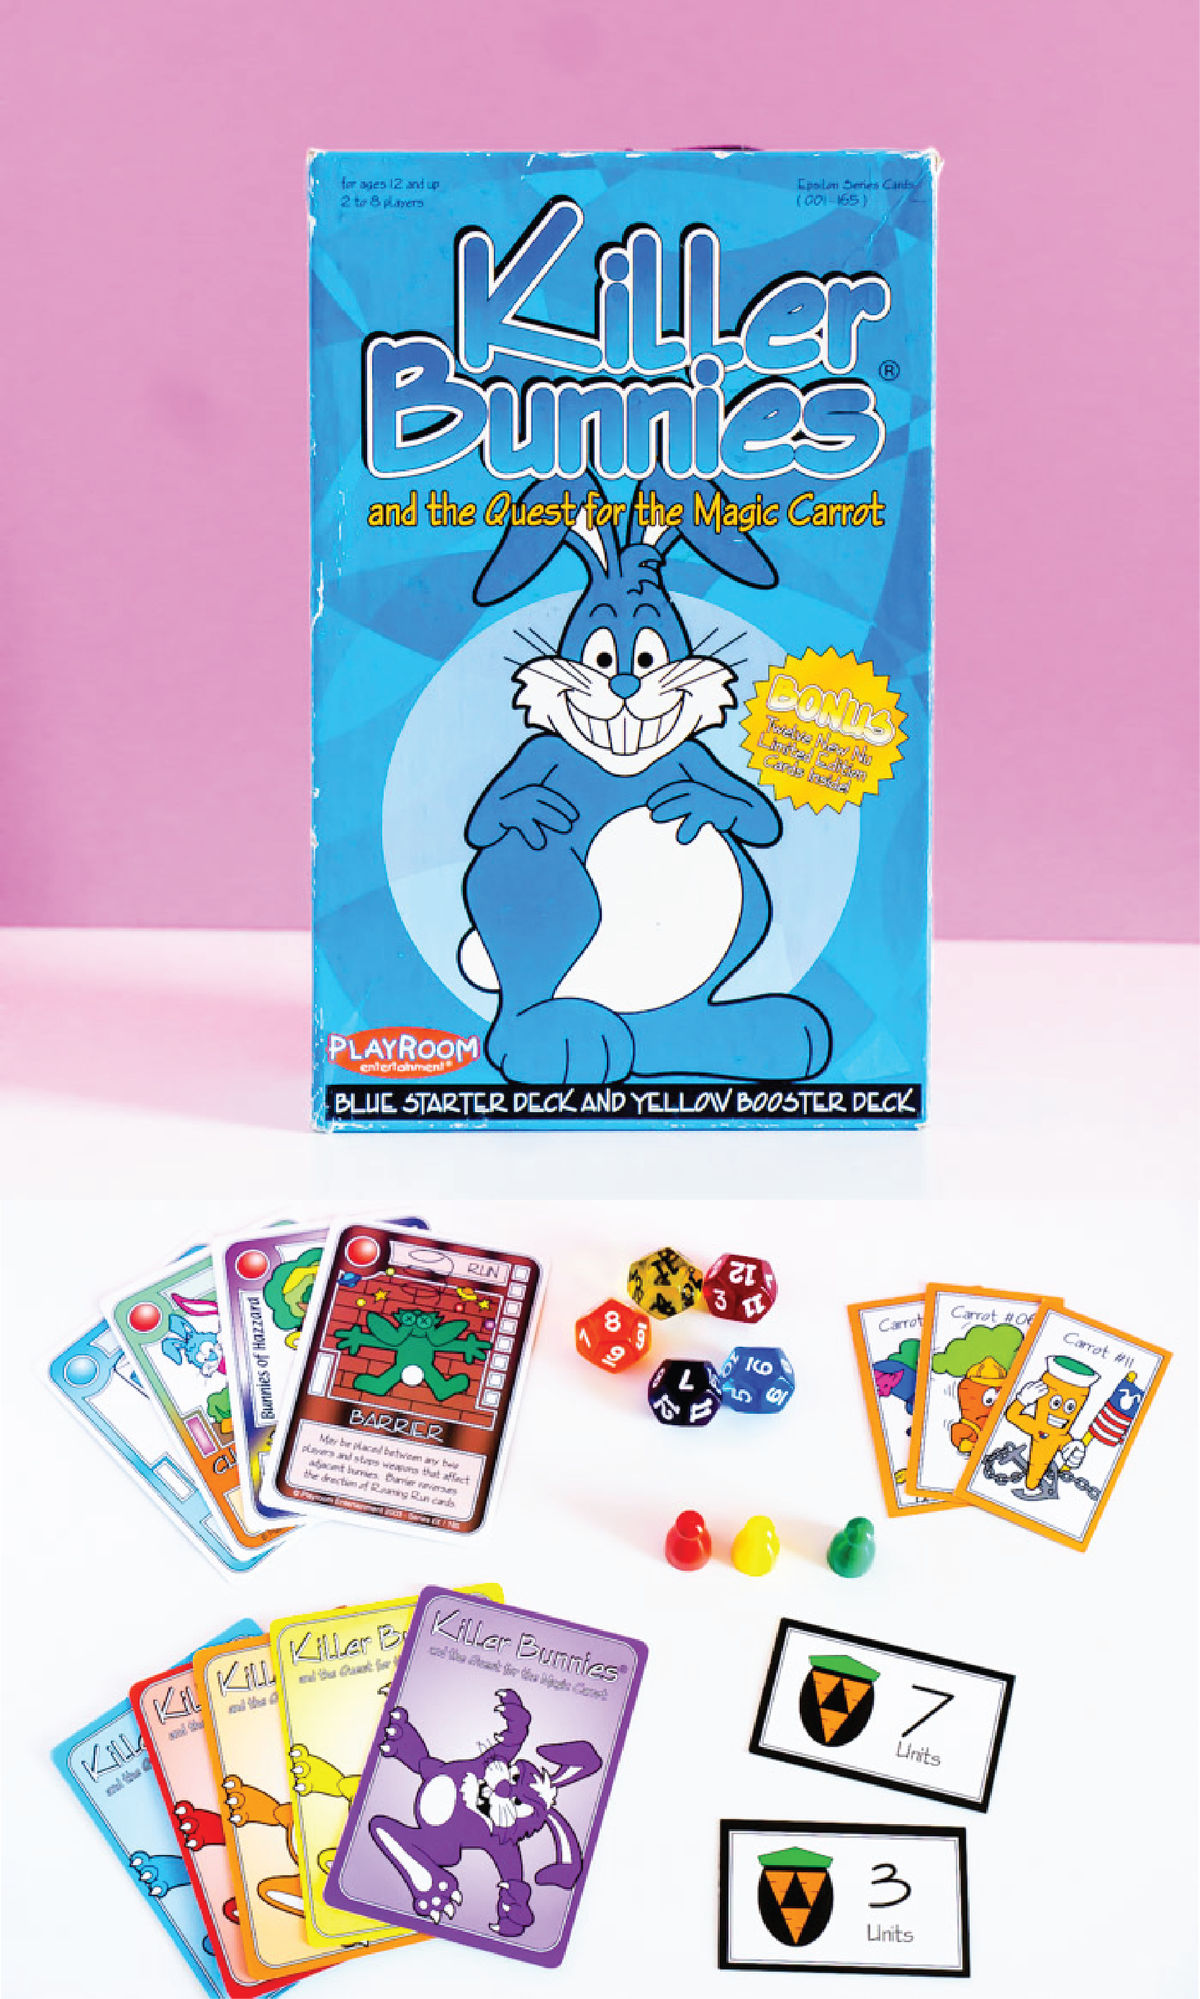 Killer Bunnies הוא אחד ממשחקי הקלפים המהנים ביותר למבוגרים